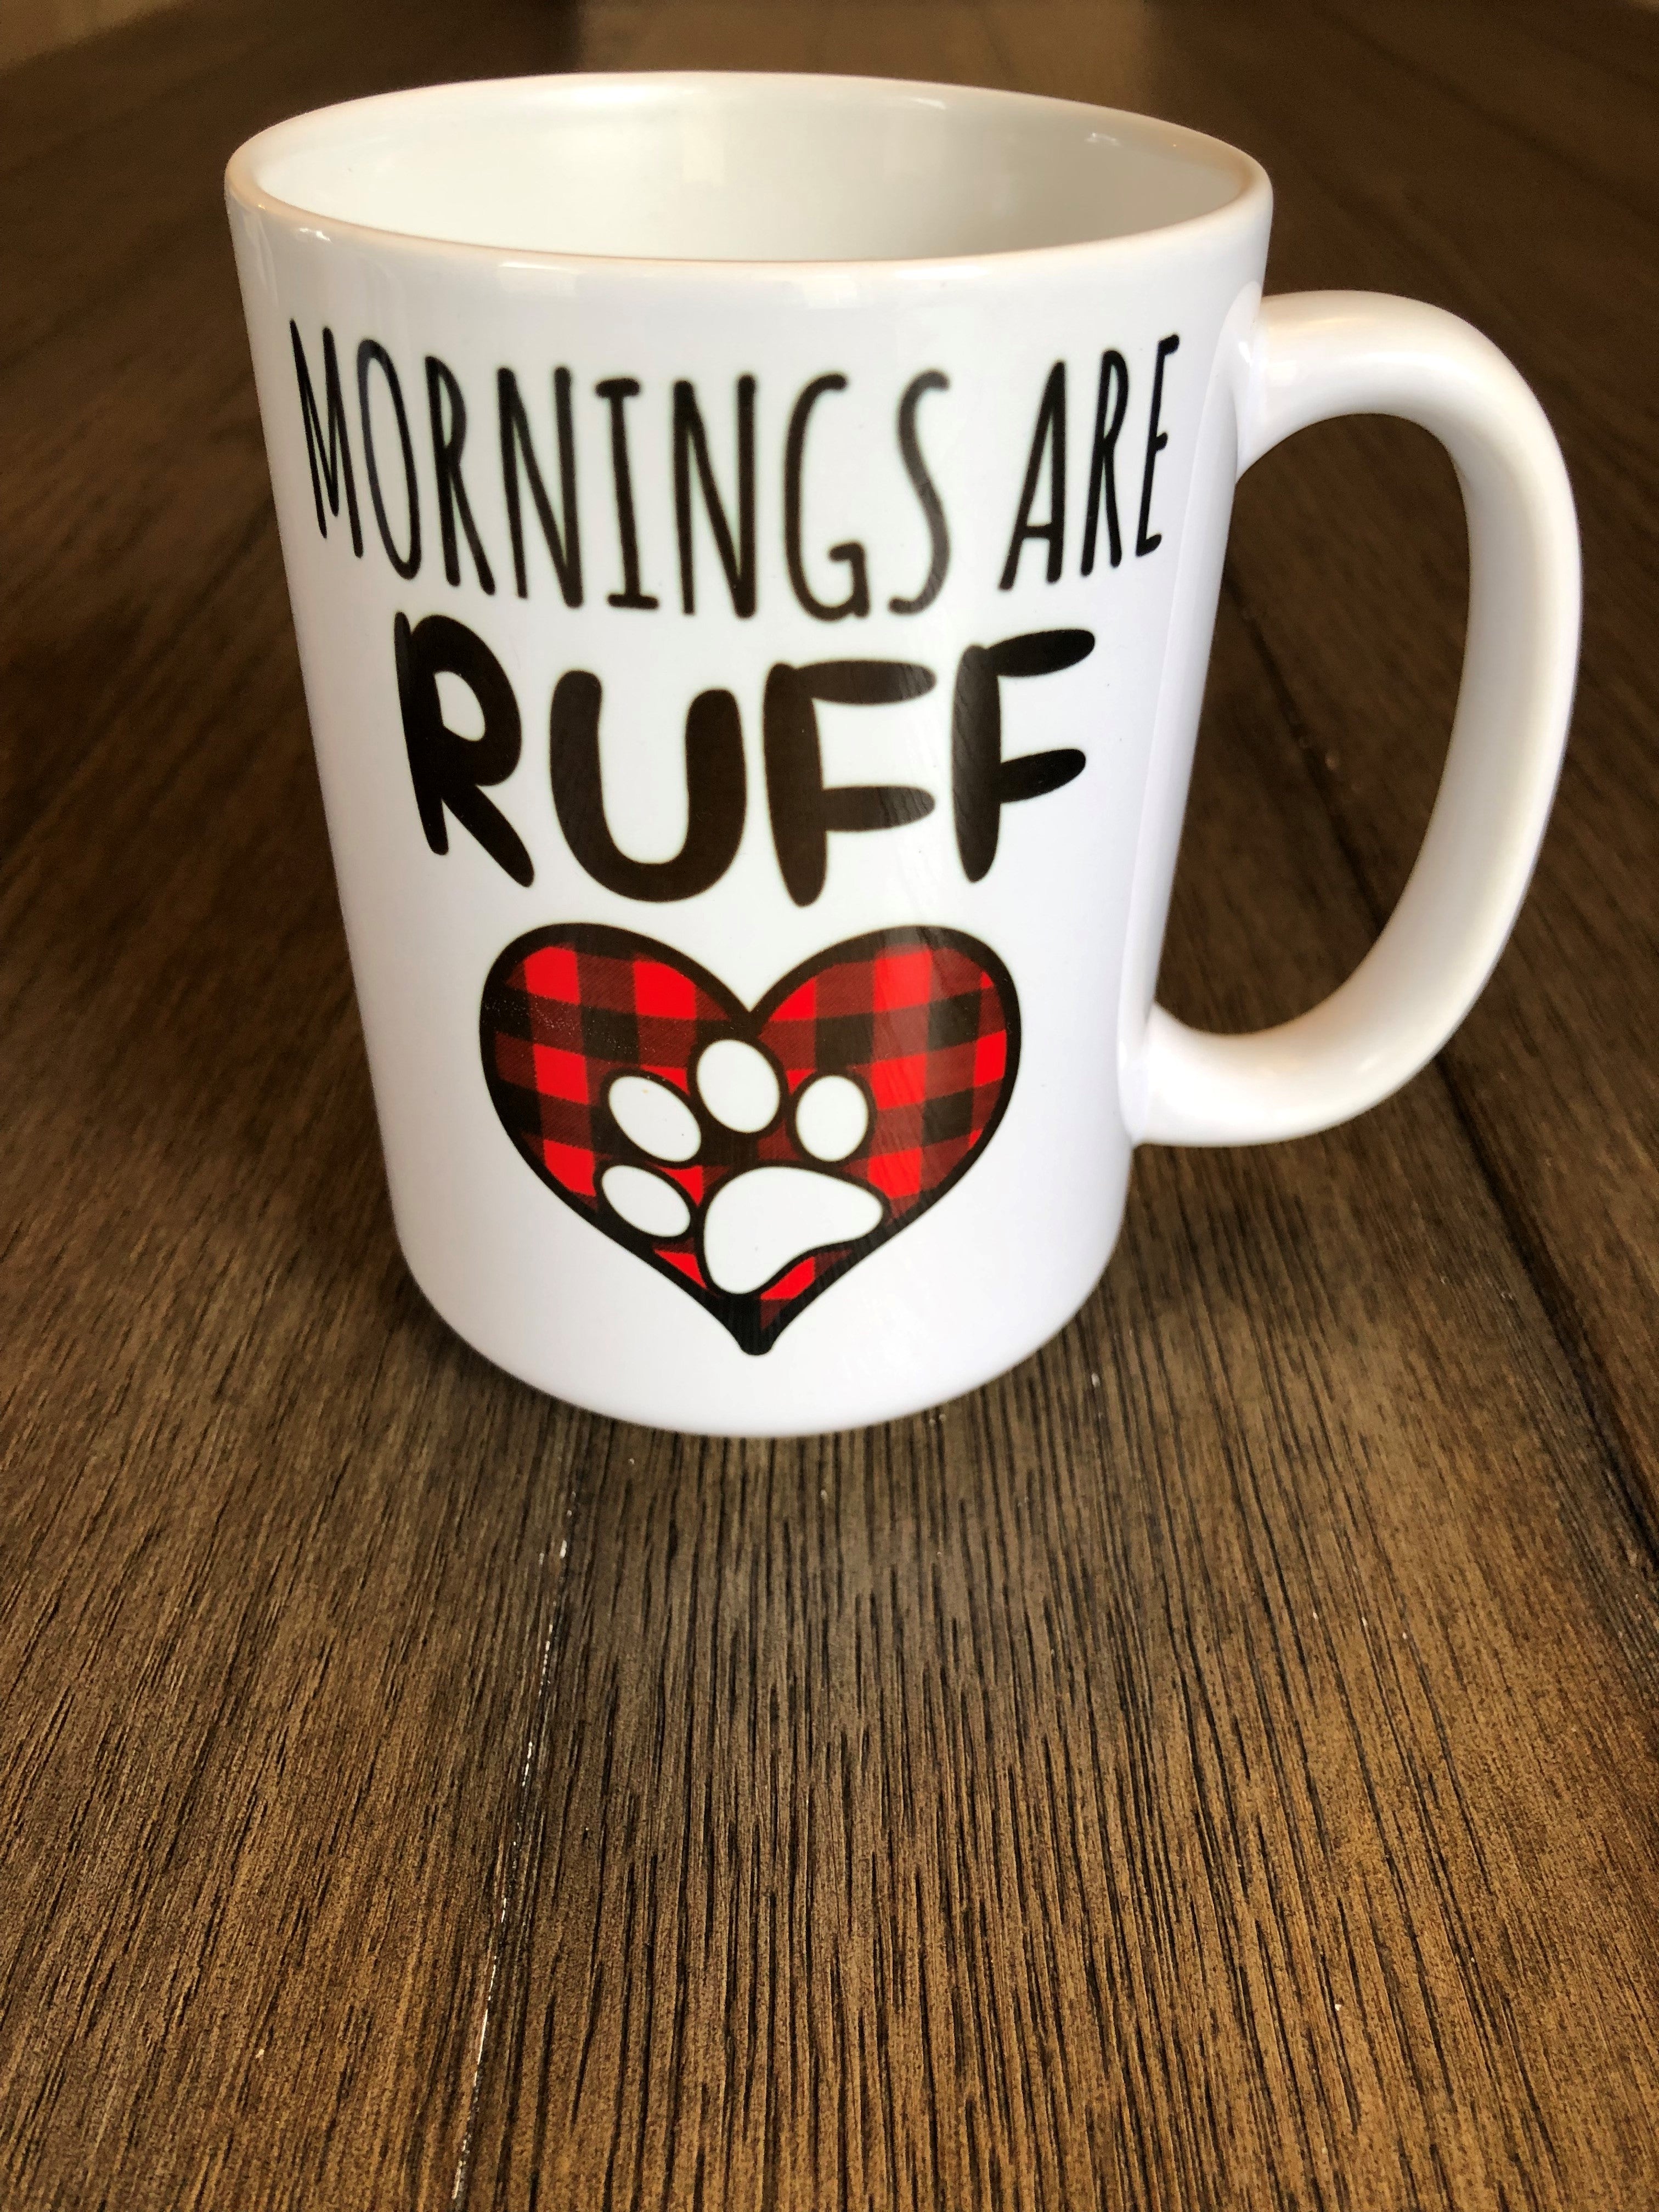 Mornings are Ruff Coffee Mug - Ruff Life Rescue Wear